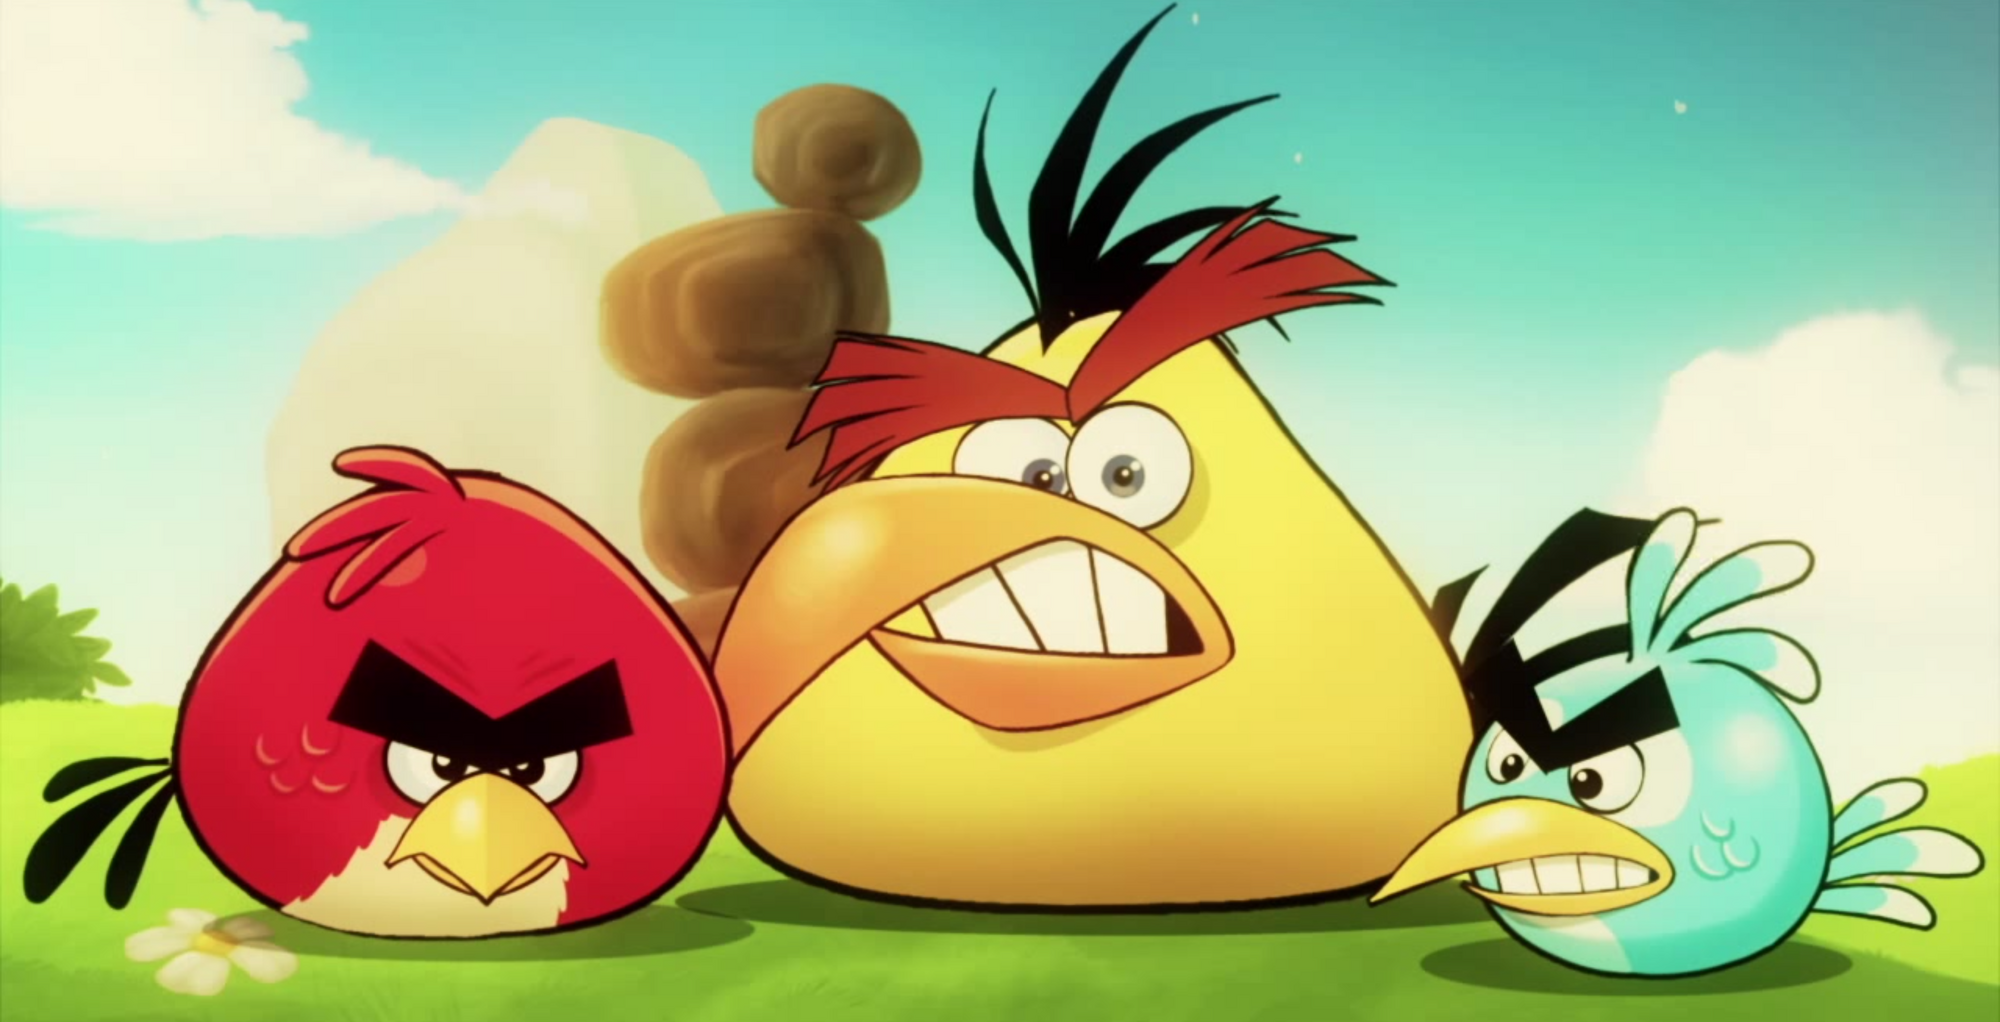 Angry birds eagle. Майти ангри Бердс. Angry Birds Mighty Eagle. Angry Birds Mighty Eagle 2012. Angry Birds могучий орёл.